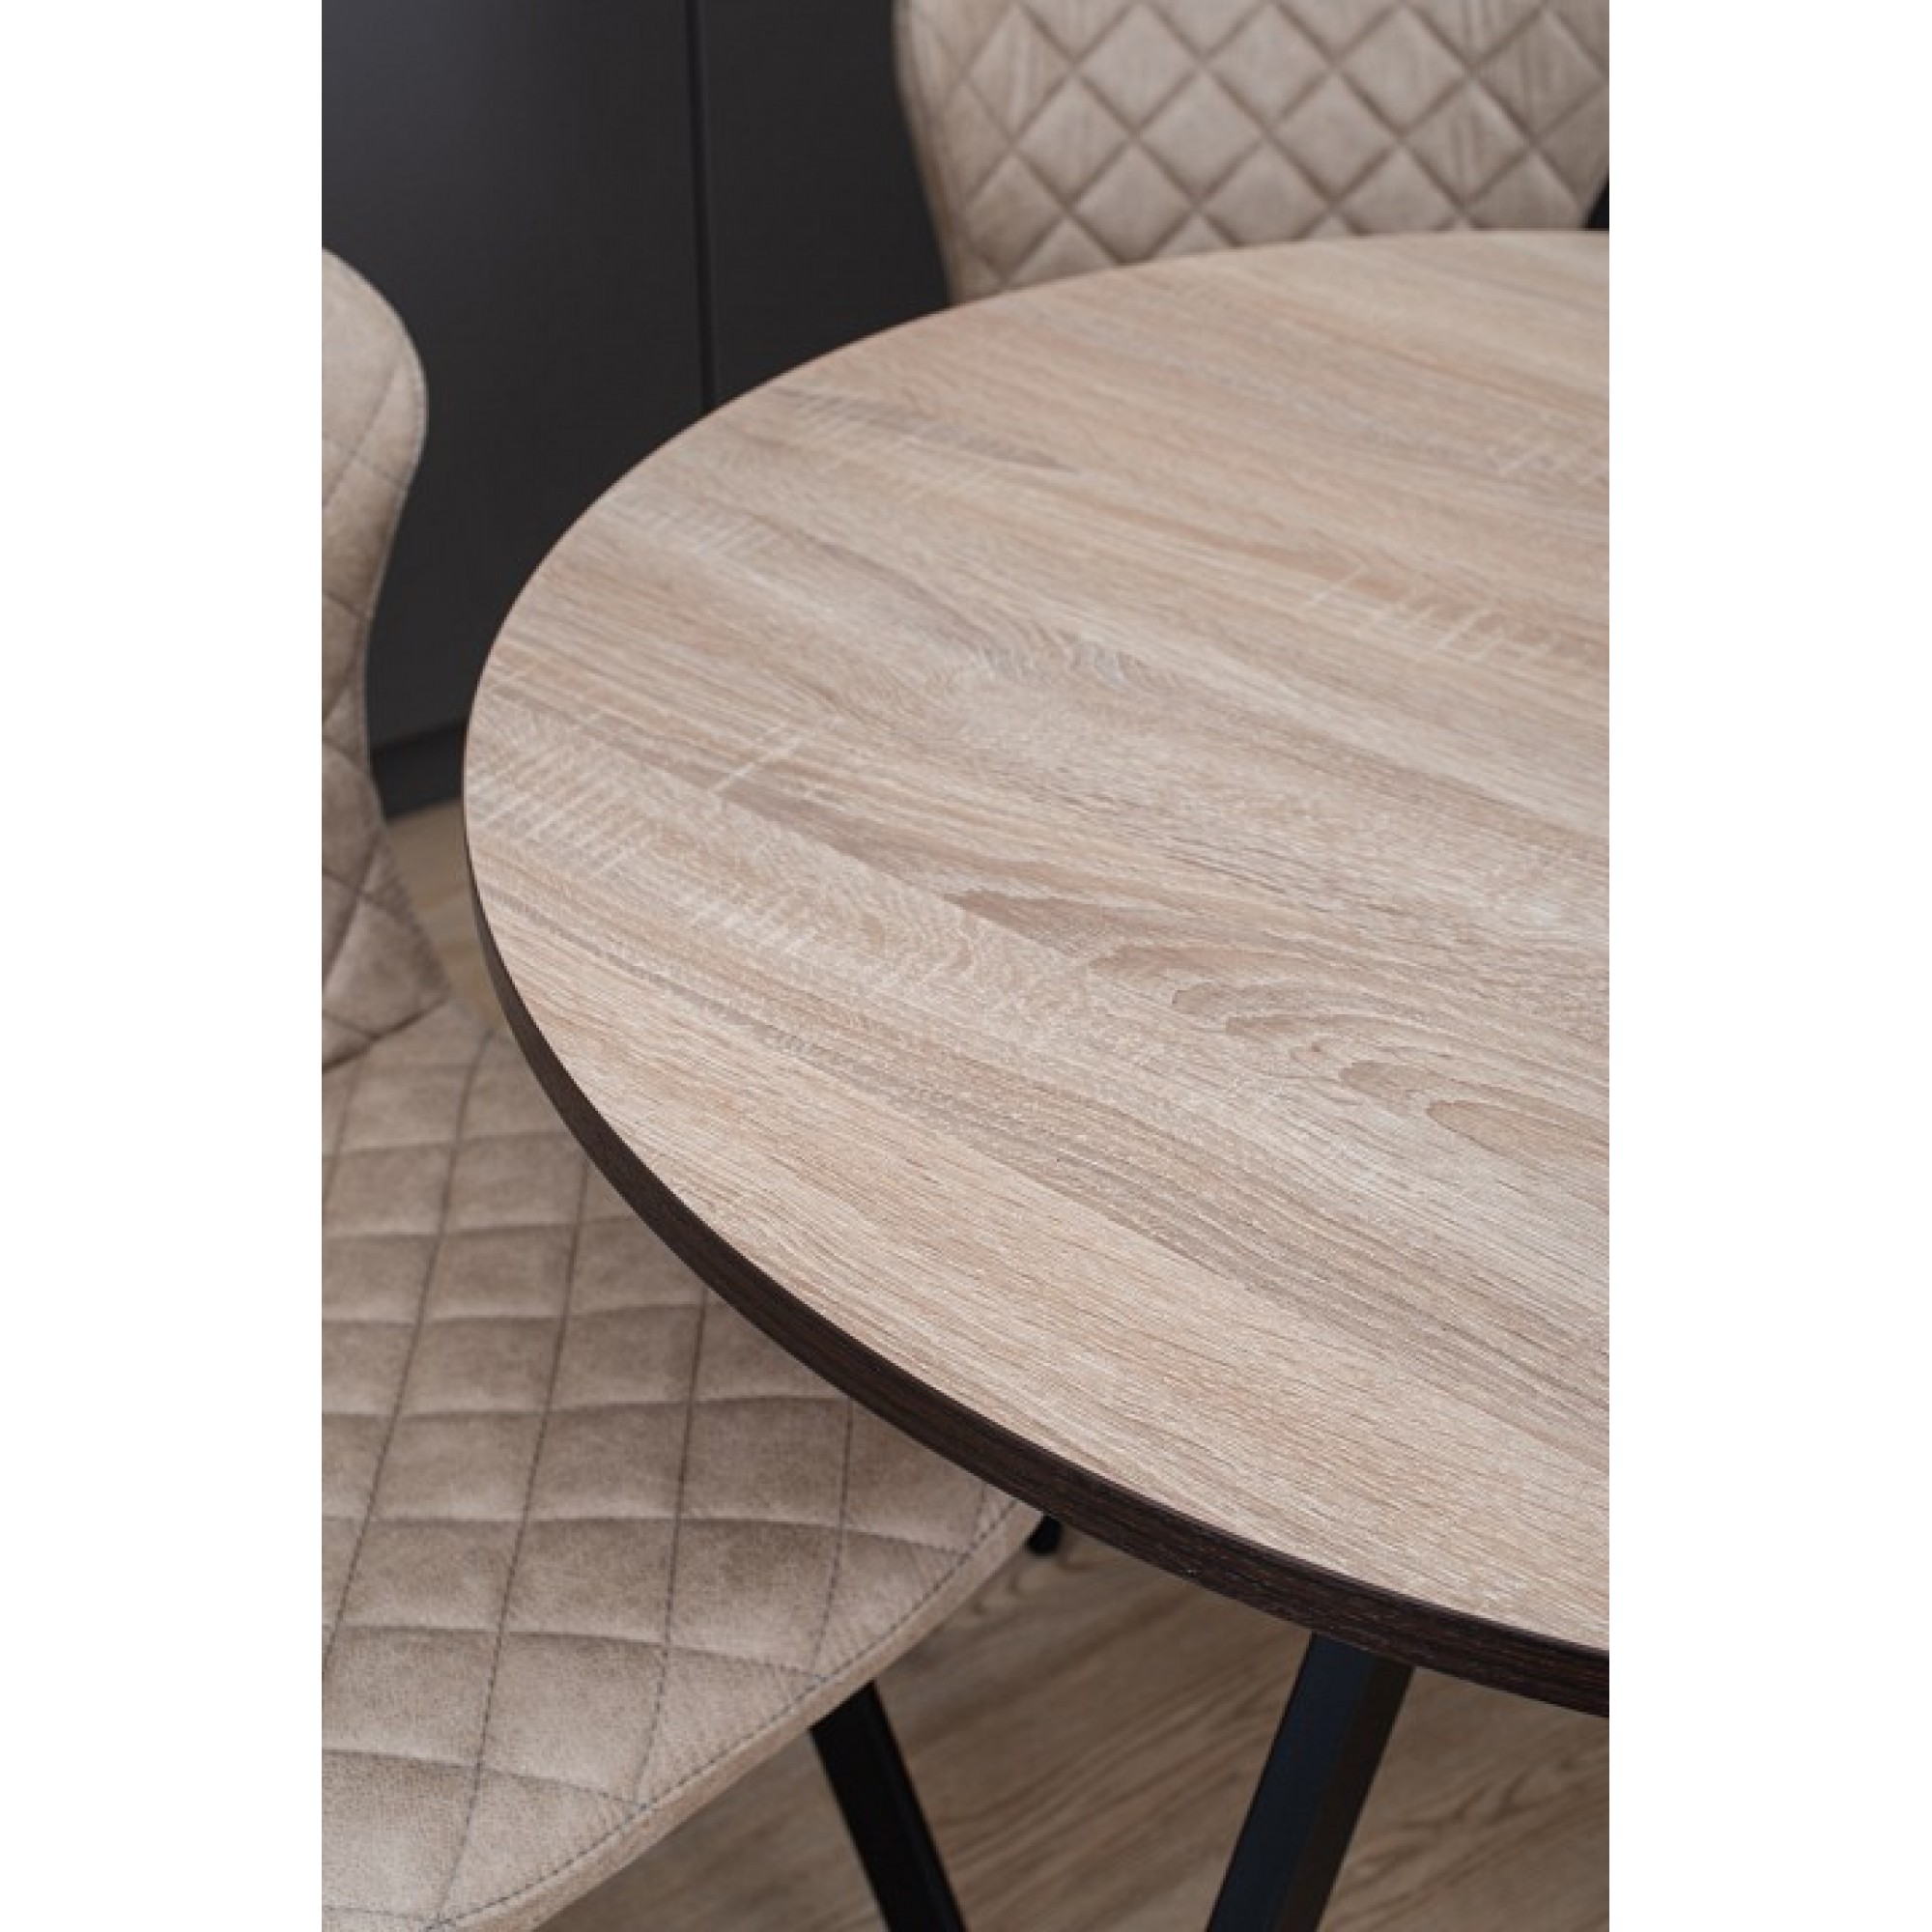 Стол обеденный Дельта К древесина коричневая светлая орех DOM_Delta_K_OS_94_CHR